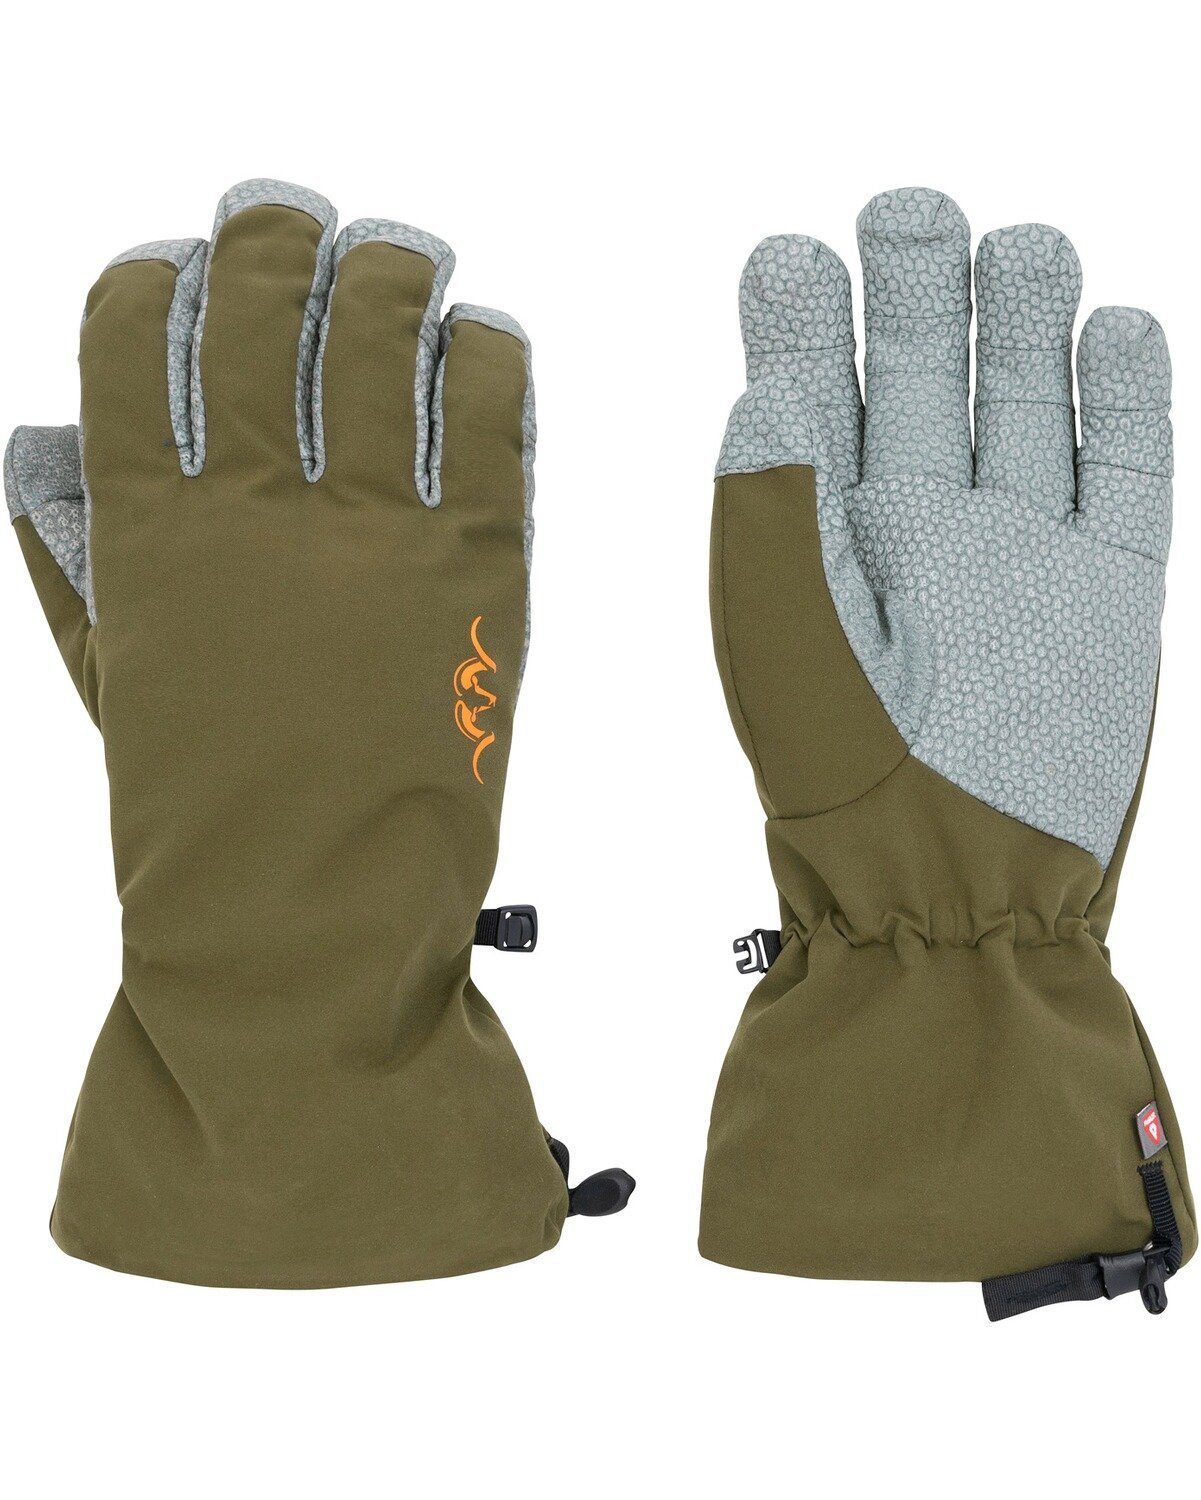 HunTec Winter-Handschuhe Fleecehandschuhe 21 Blaser Dunkeloliv